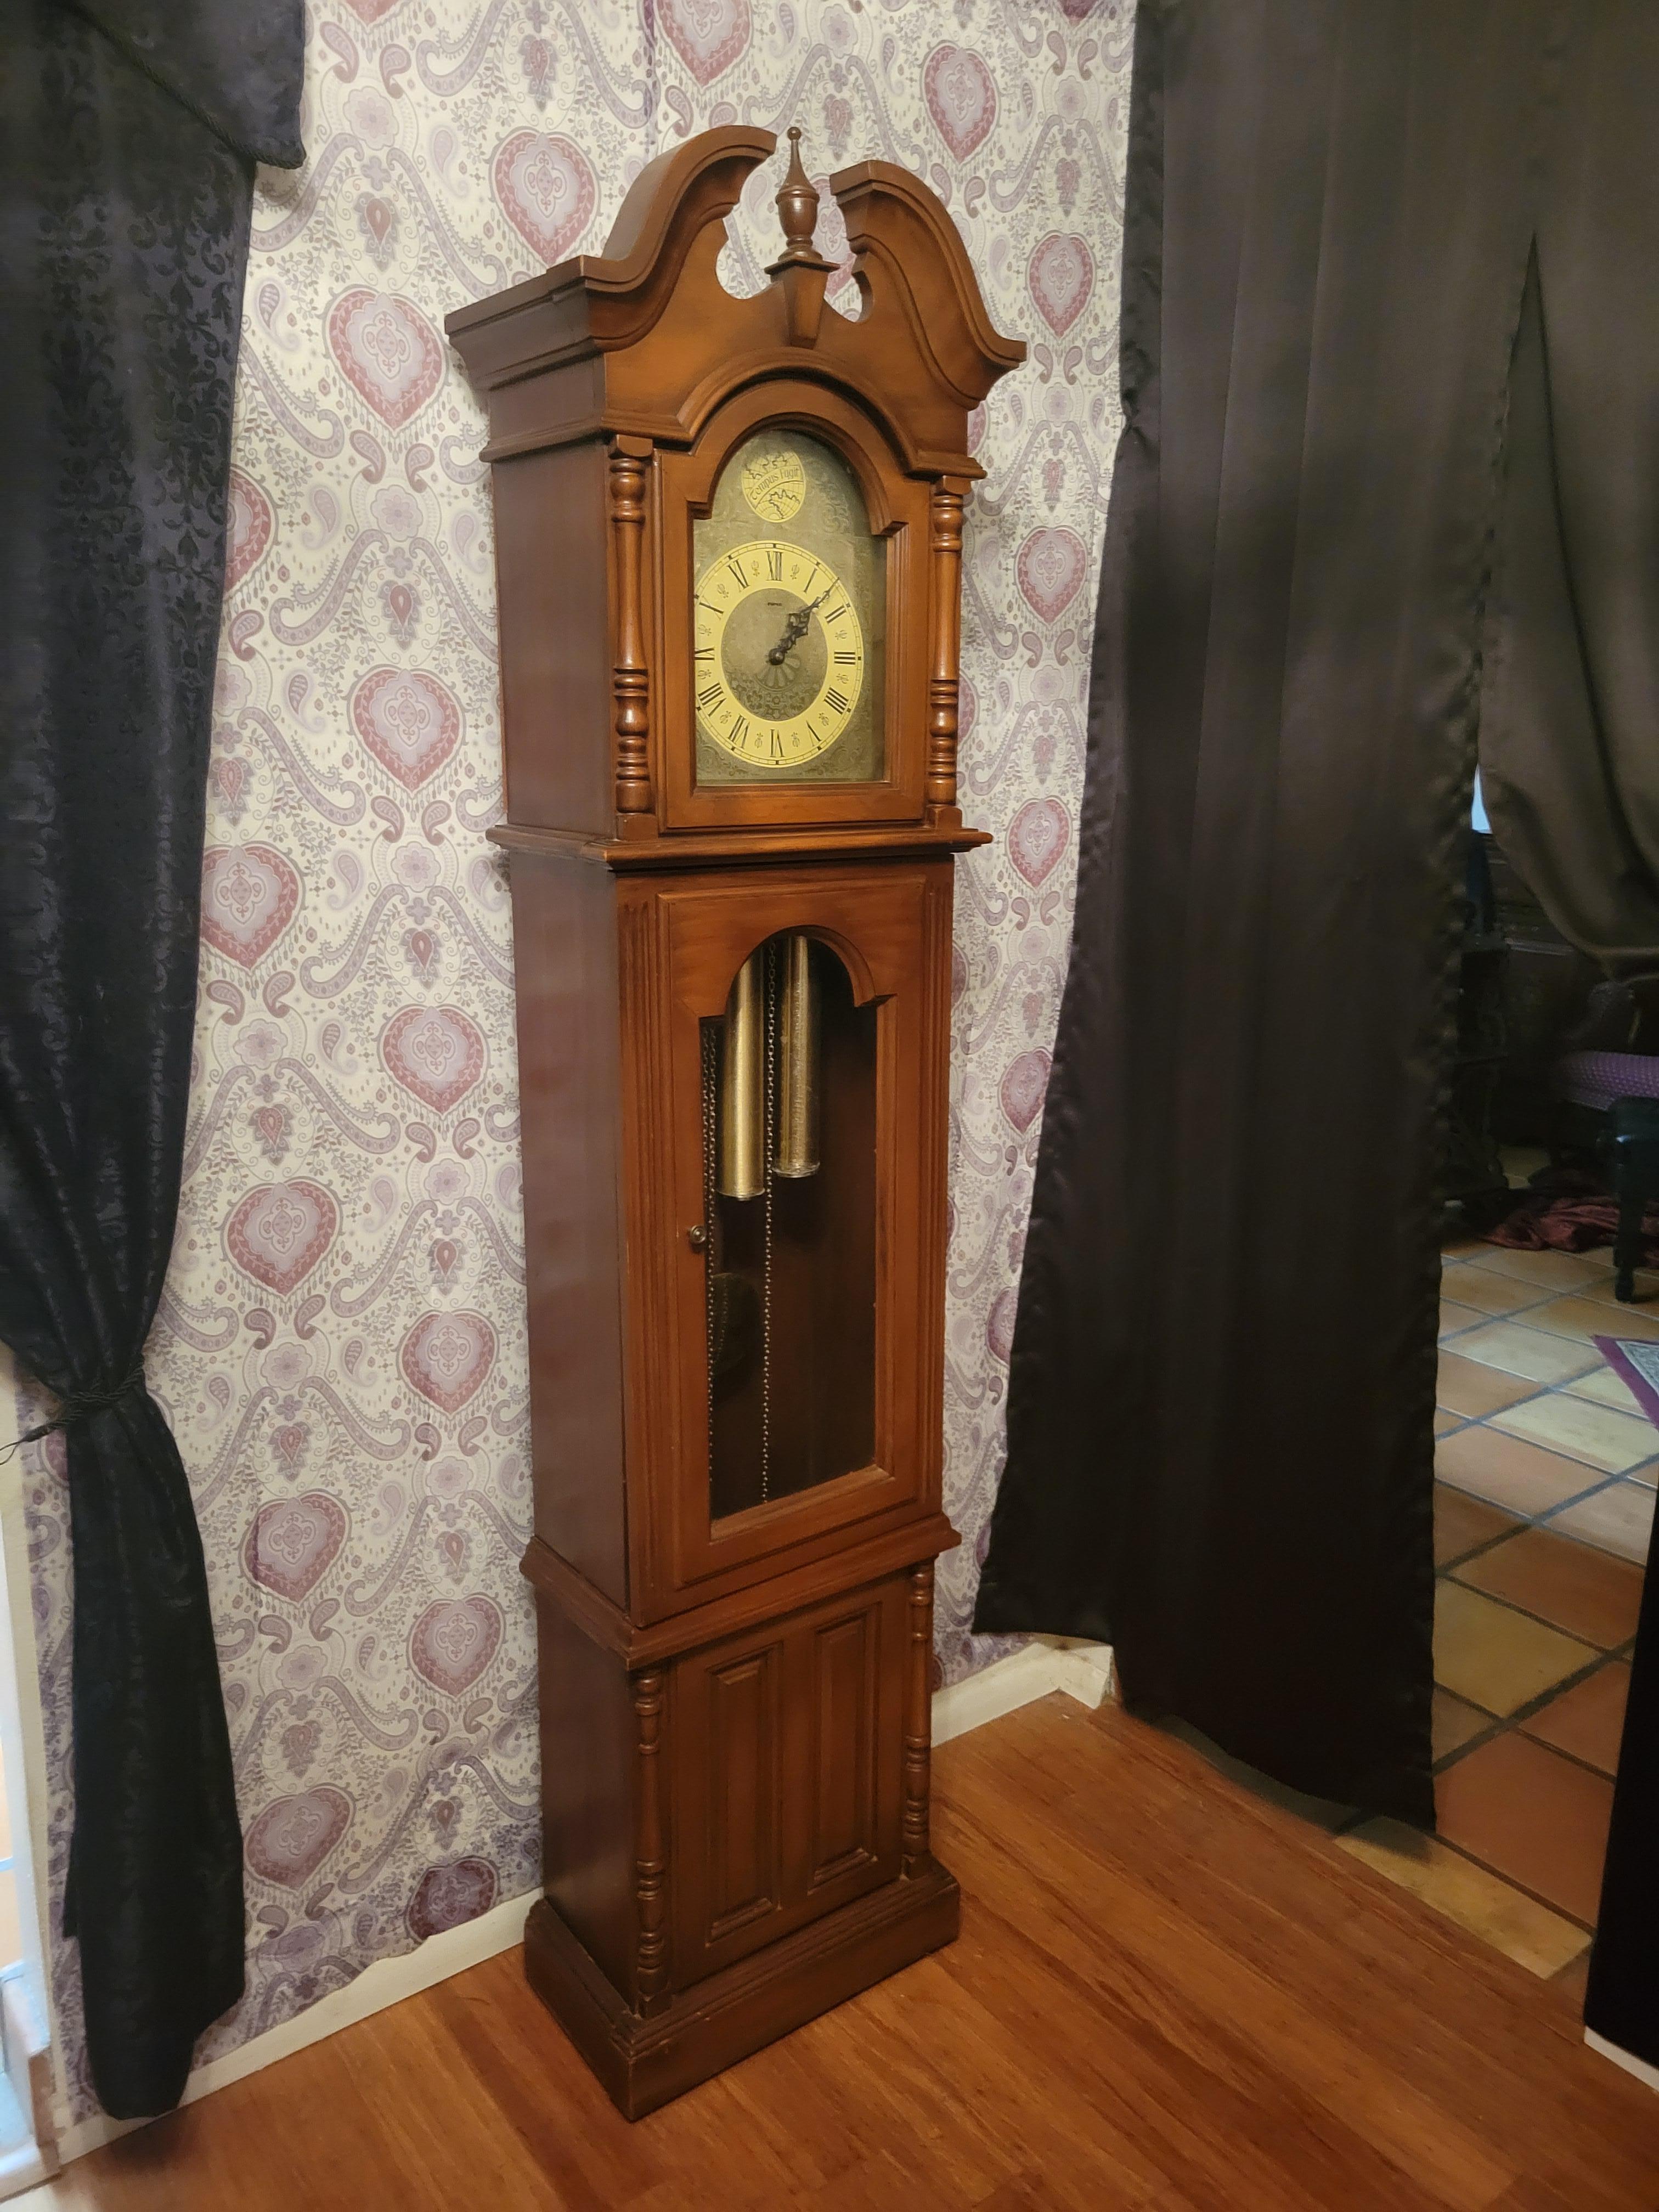 Vintage, 1976, horloge de grand-père Piper à poids. L'horloge est équipée d'un mouvement Franz Hermle 451-053 de 85 cm / 70,77 d'Allemagne de l'Ouest avec un magnifique carillon de Westminster. Le carillon se met en marche toutes les 15 minutes et